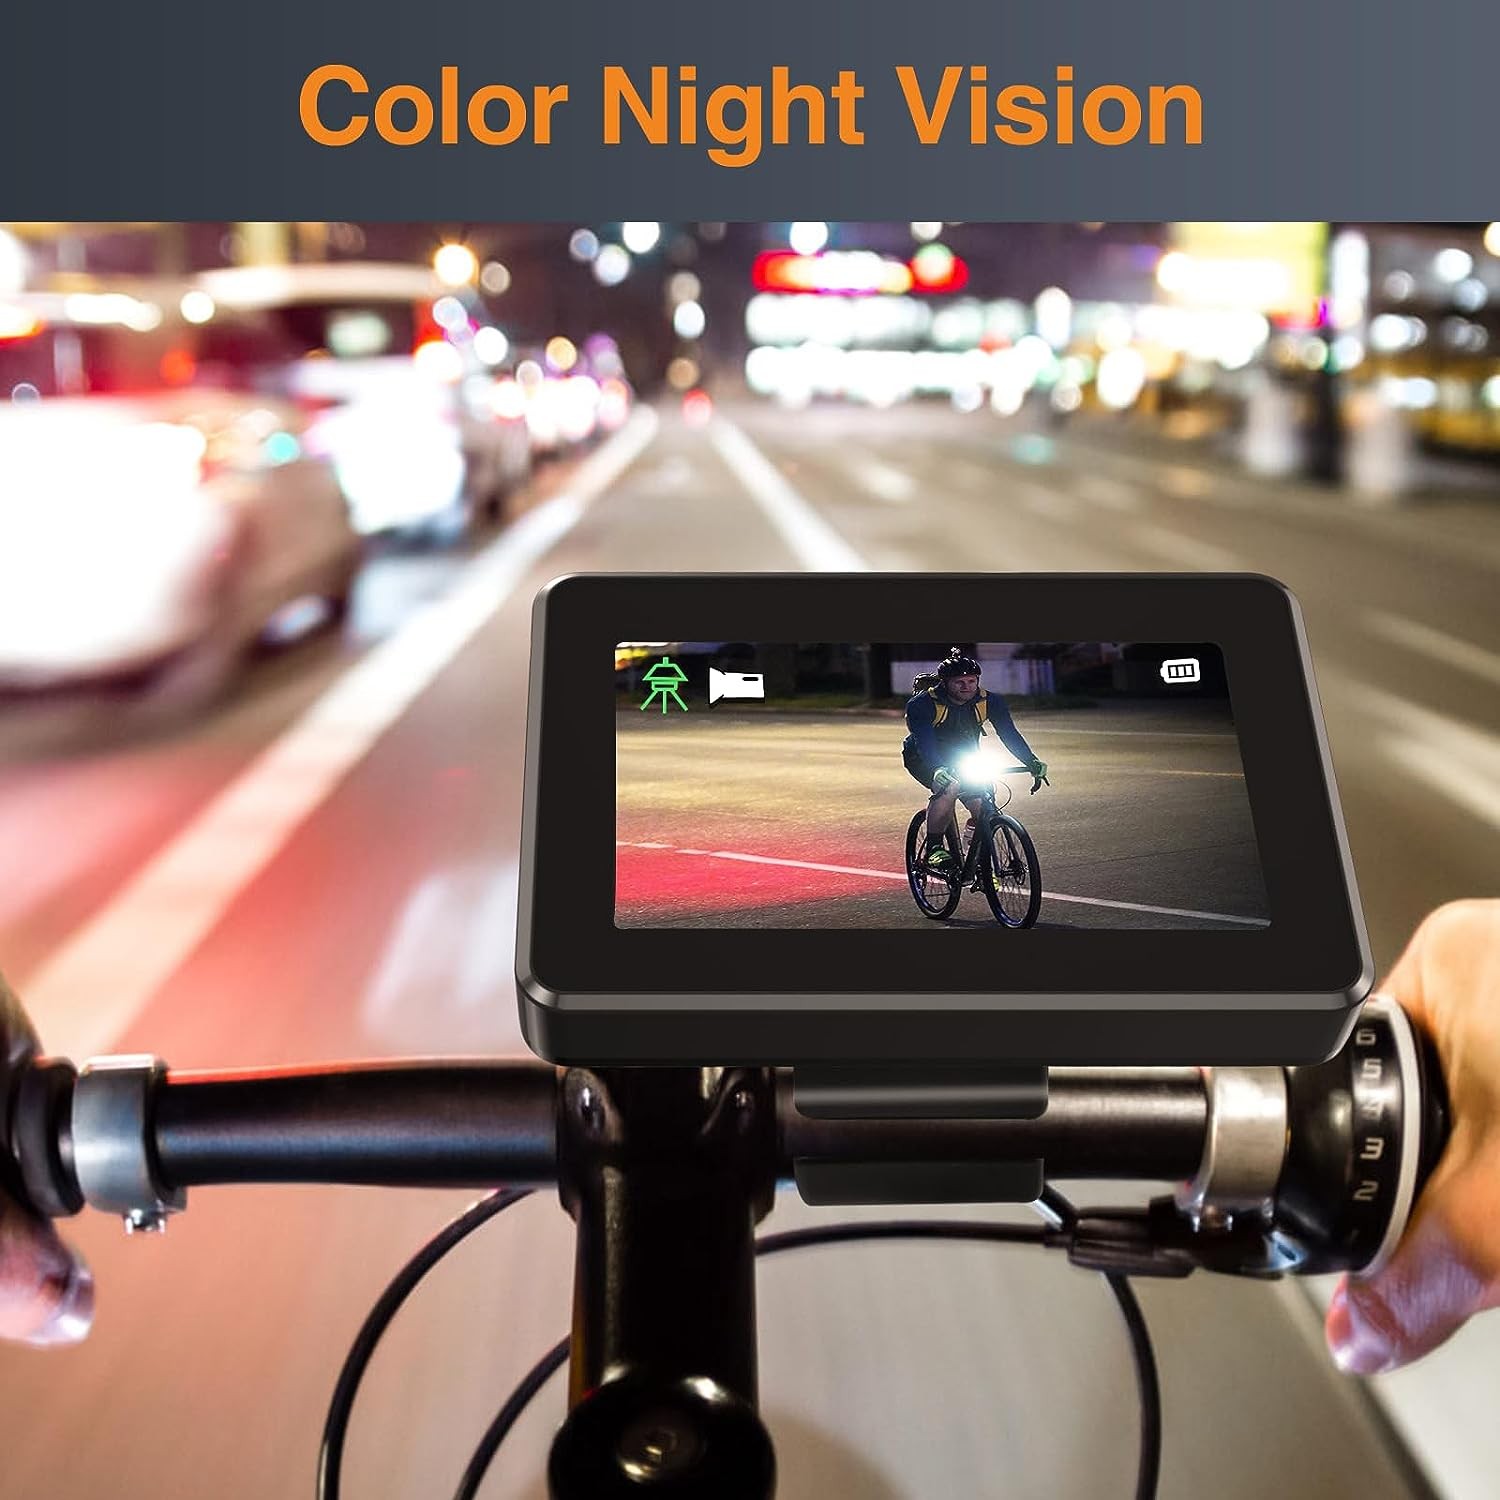 مجموعه مانیتور دوچرخه با دوربین با دید در شب